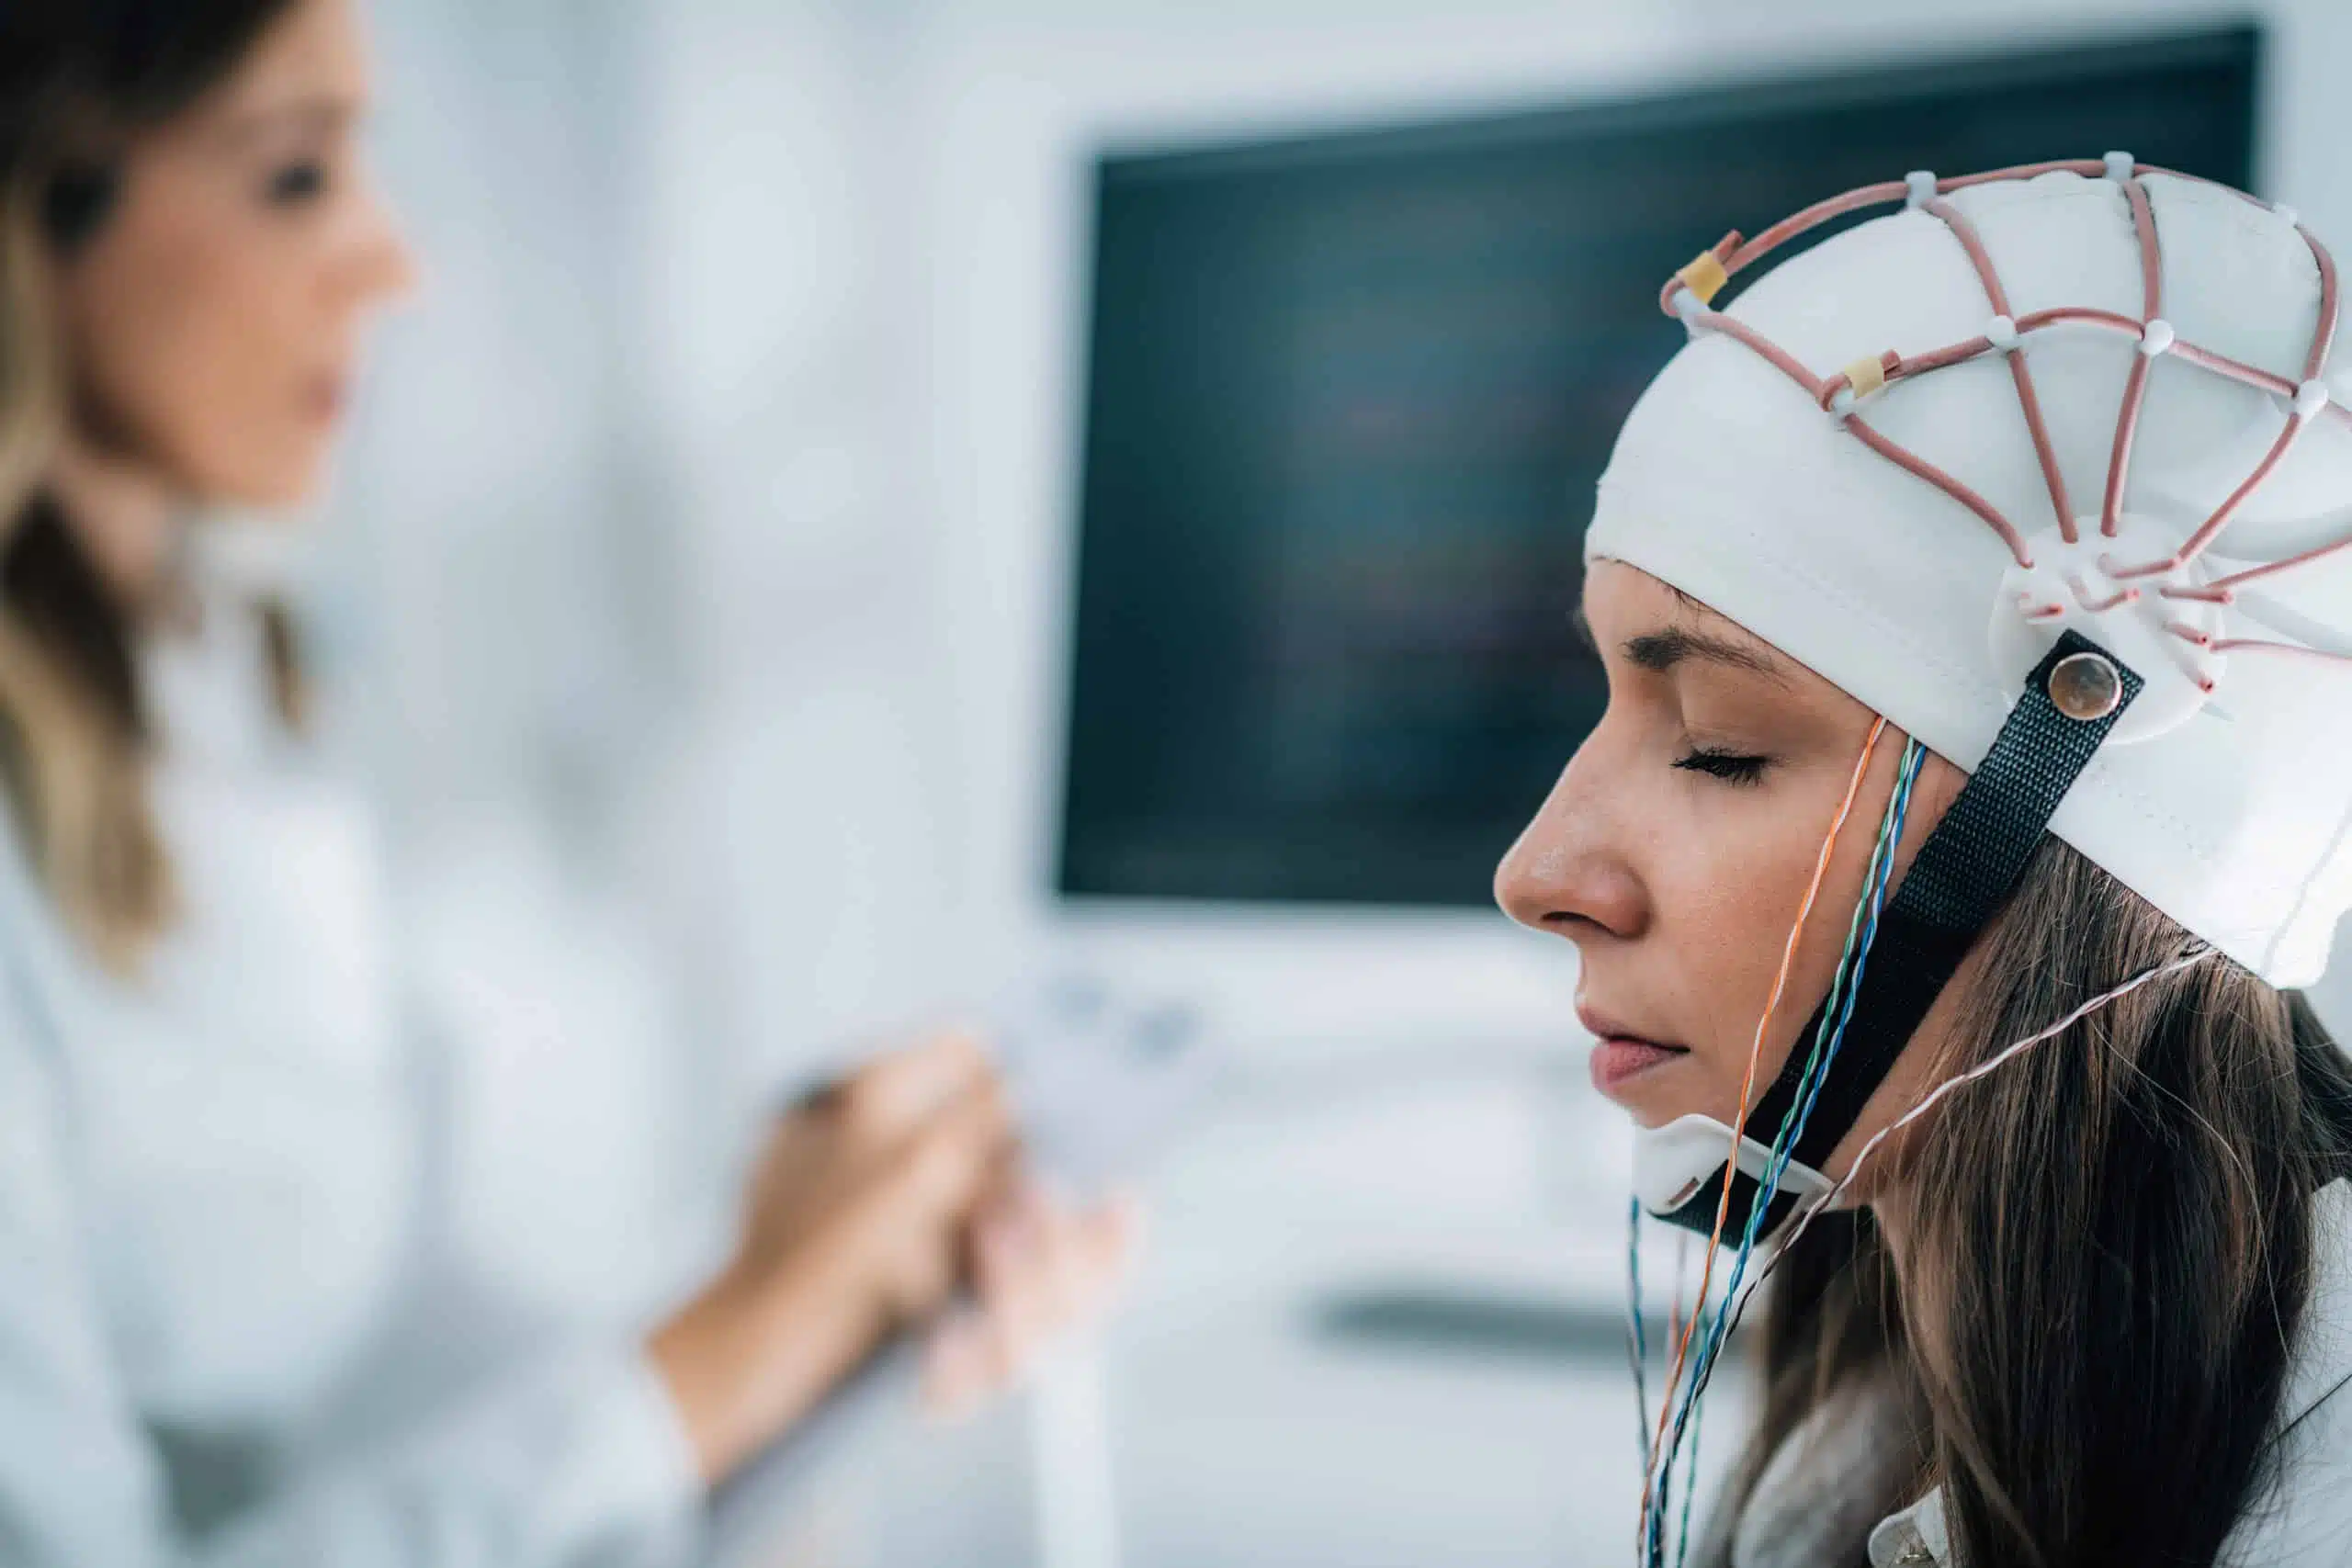 Ээг невролог. Электроэнцефалограф EEG-1200k. Врачи электроэнцефалограмма. Женщина занимается изучением мозга. Easy Neurology женщина преподаватель.